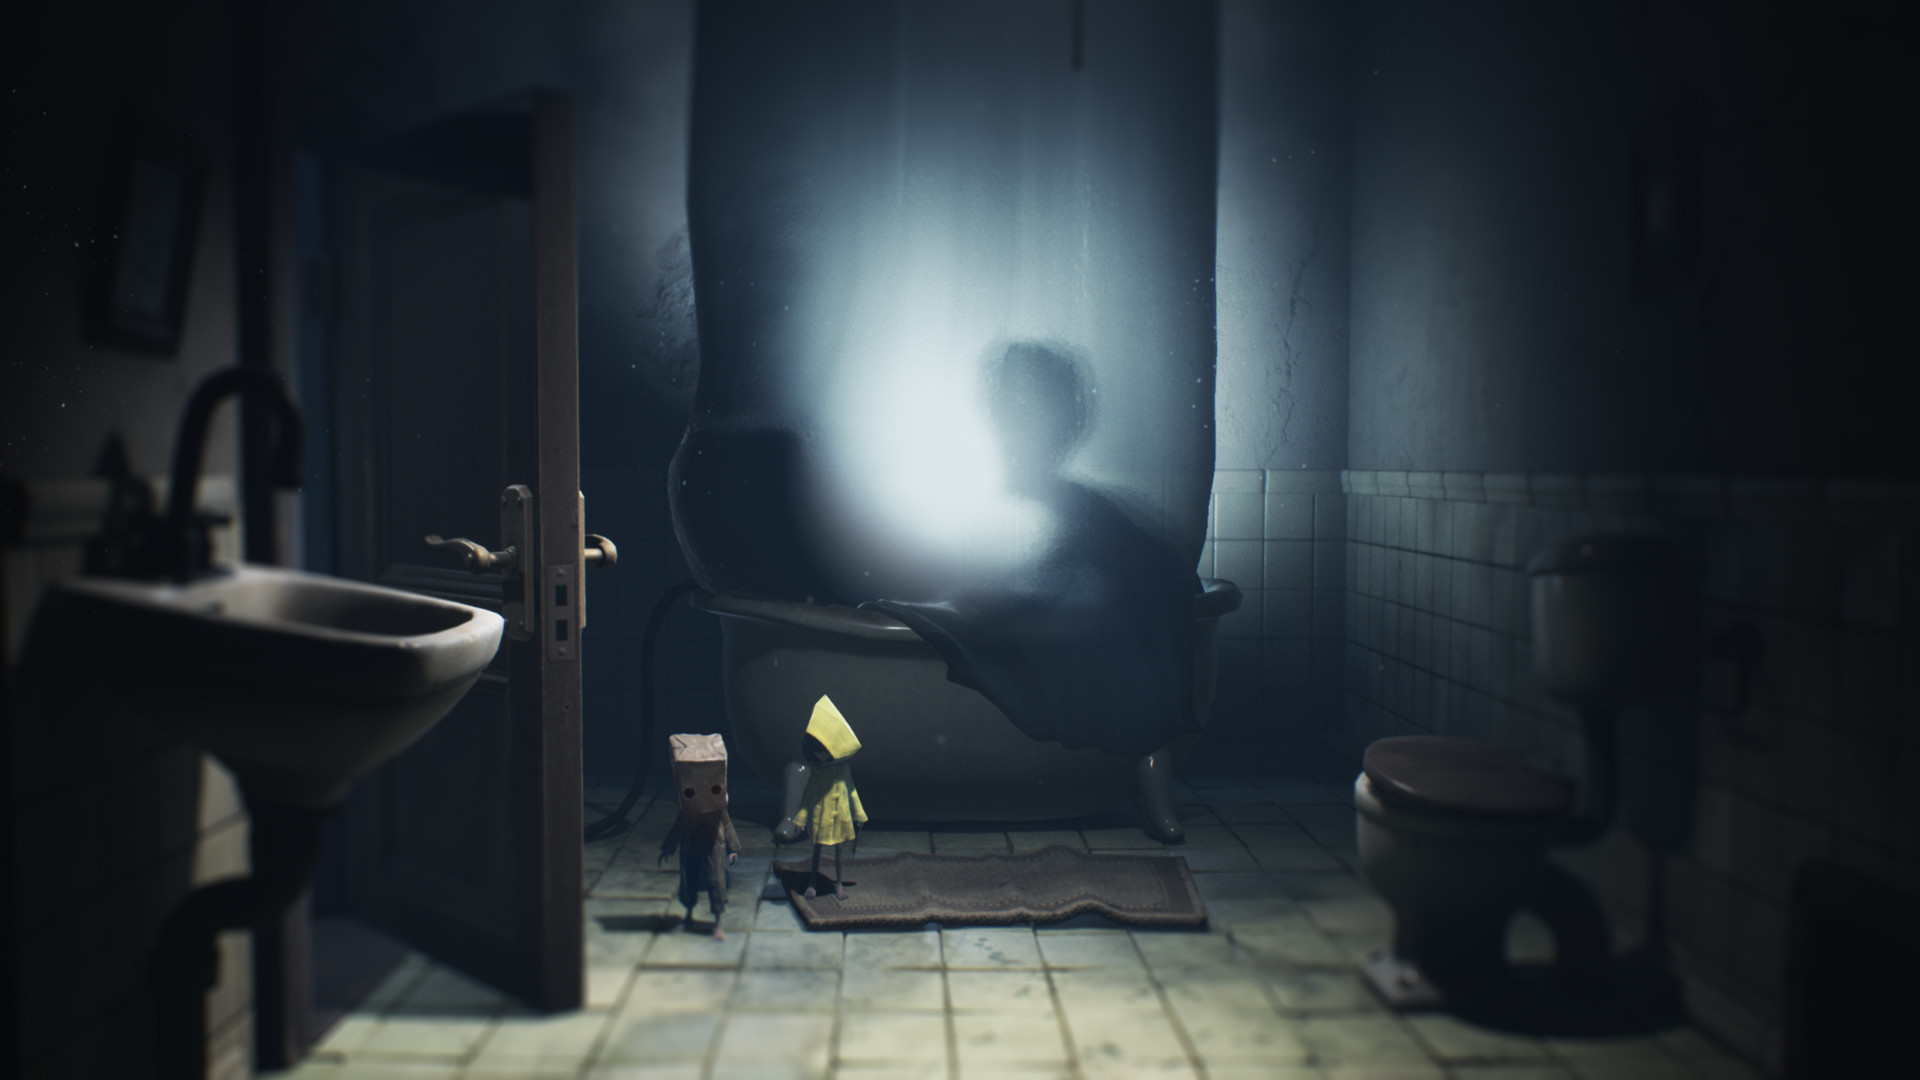 Demo de Little Nightmares II já pode ser baixada na Steam - Mão de